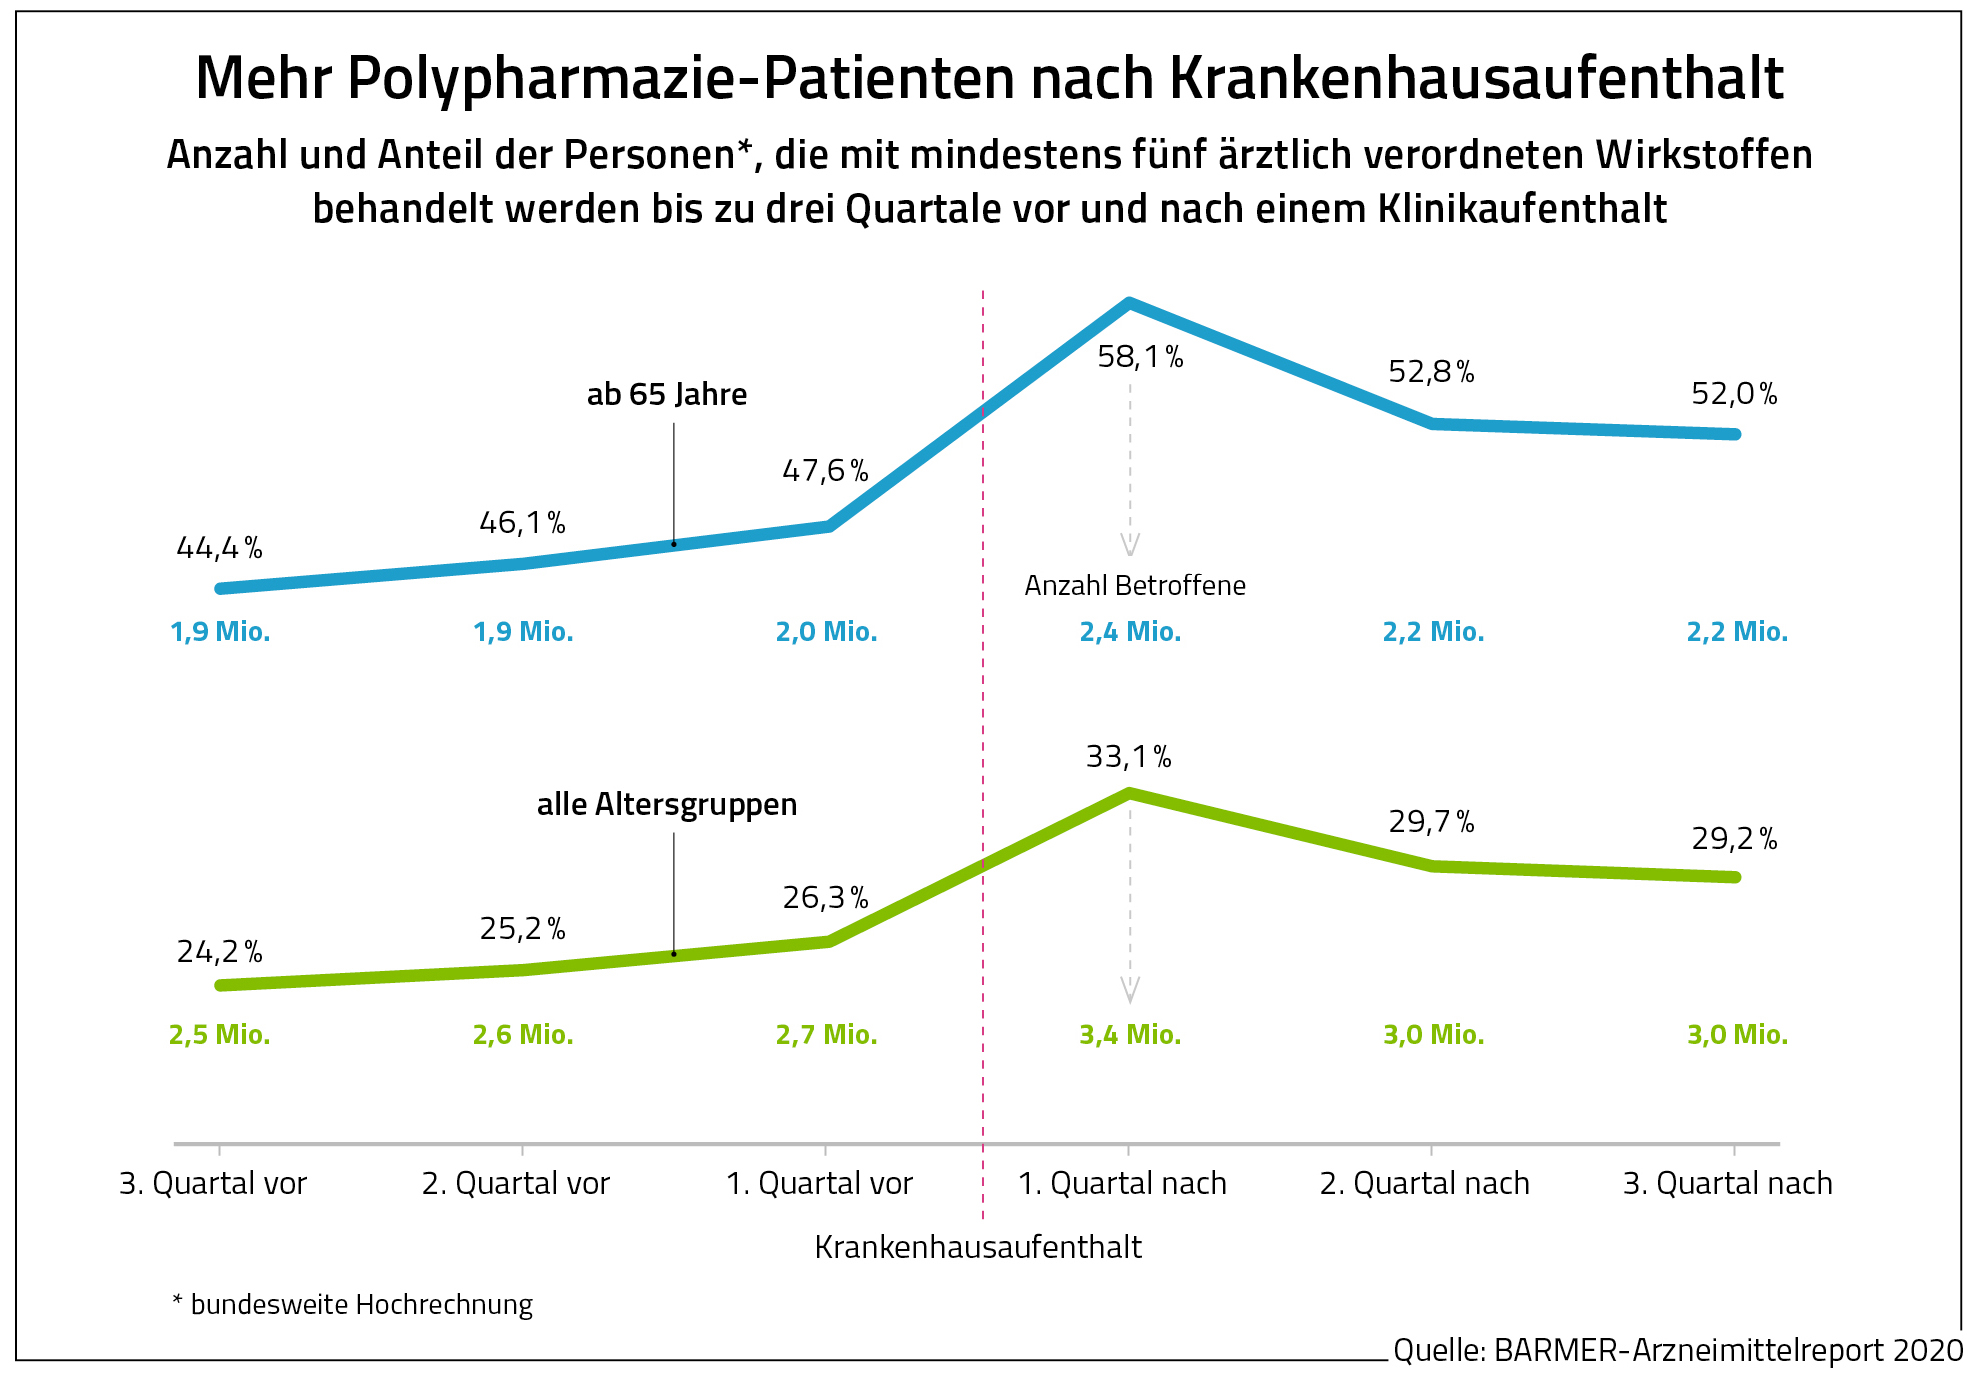 Die Grafik zeigt die Zahl der Polypharmaziepatienten vor und nach einem Krankenhausaufenthalt.